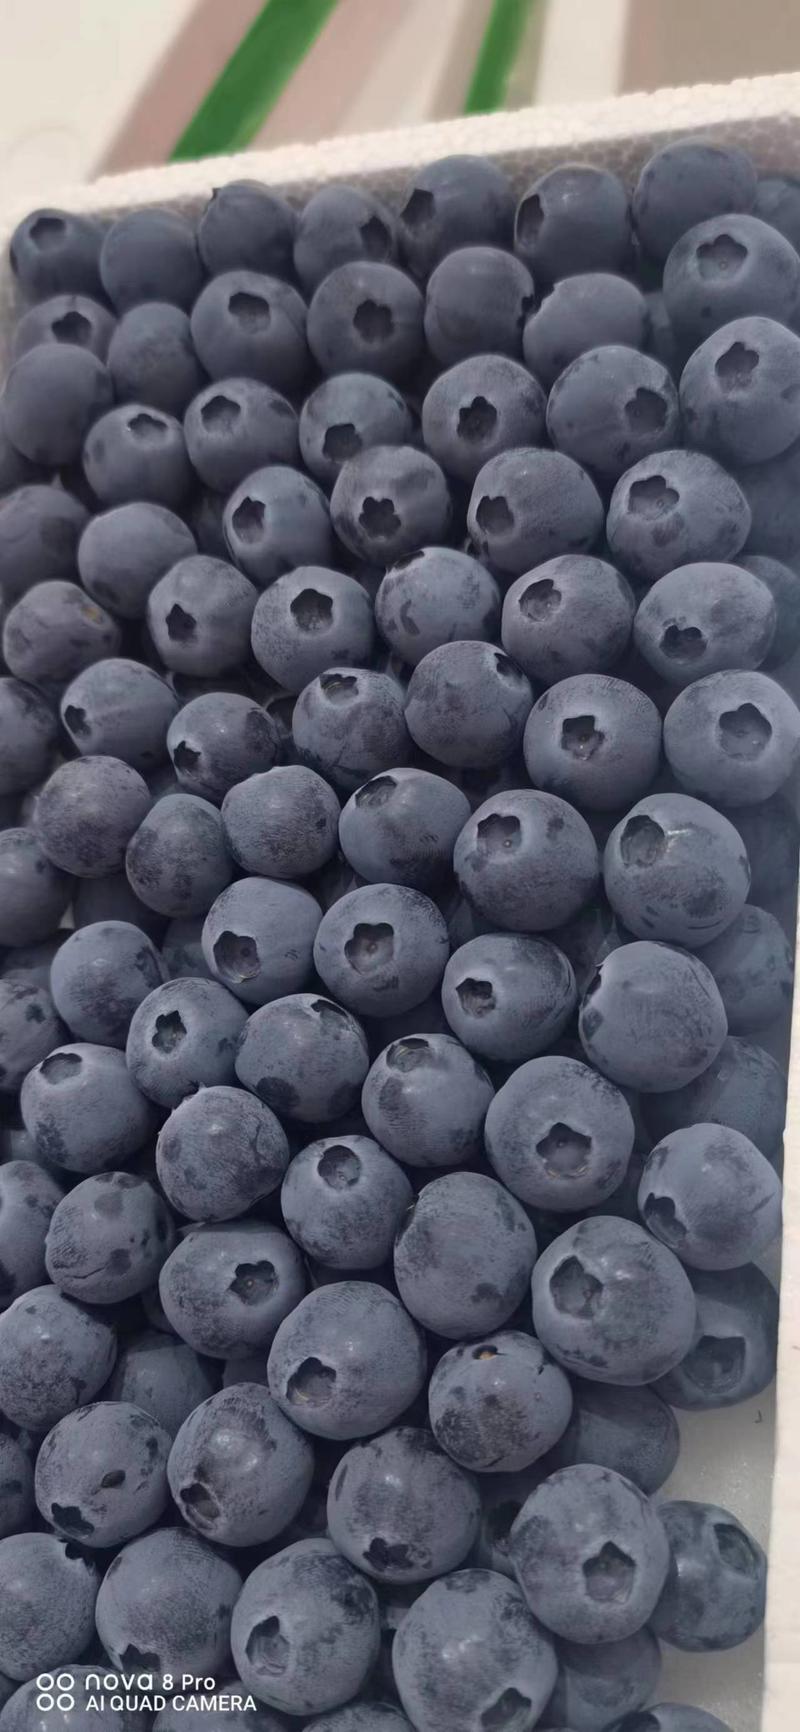 【热卖】蓝莓优瑞卡H5L25L11品质好大量上市